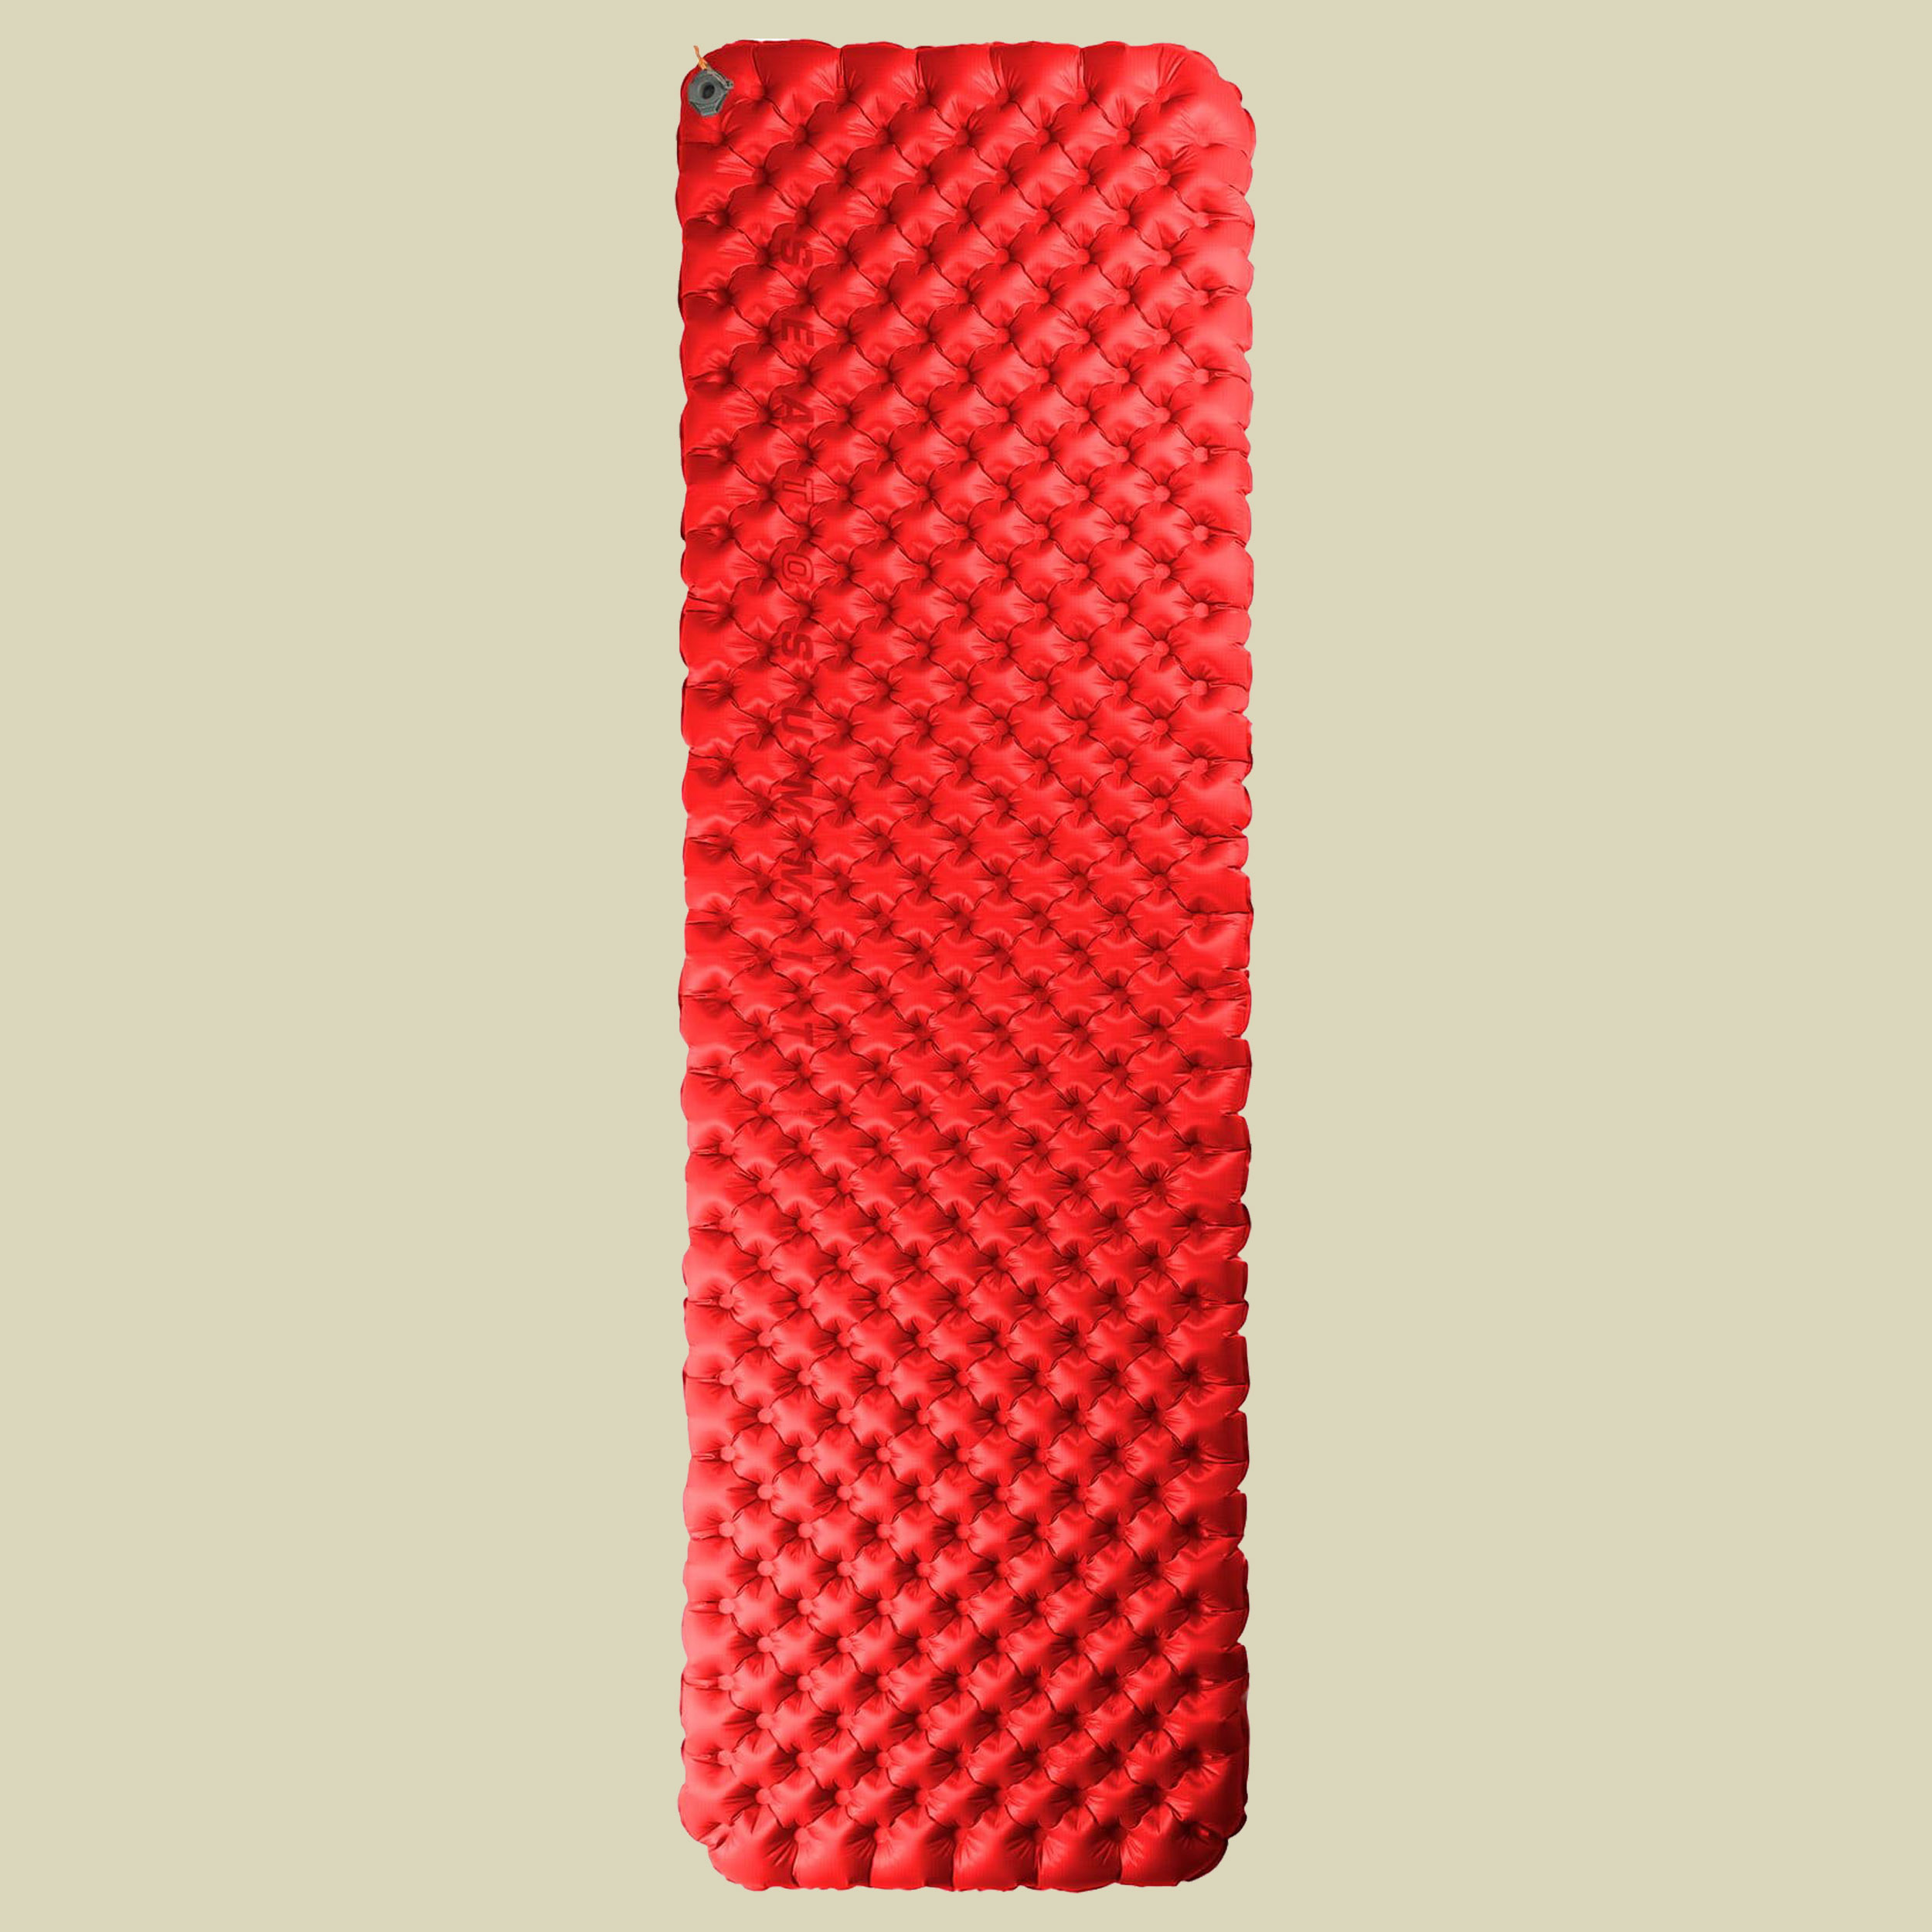 Comfort Plus XT Insulated Air Rectangular Liegefläche 186 x 64 cm Farbe red